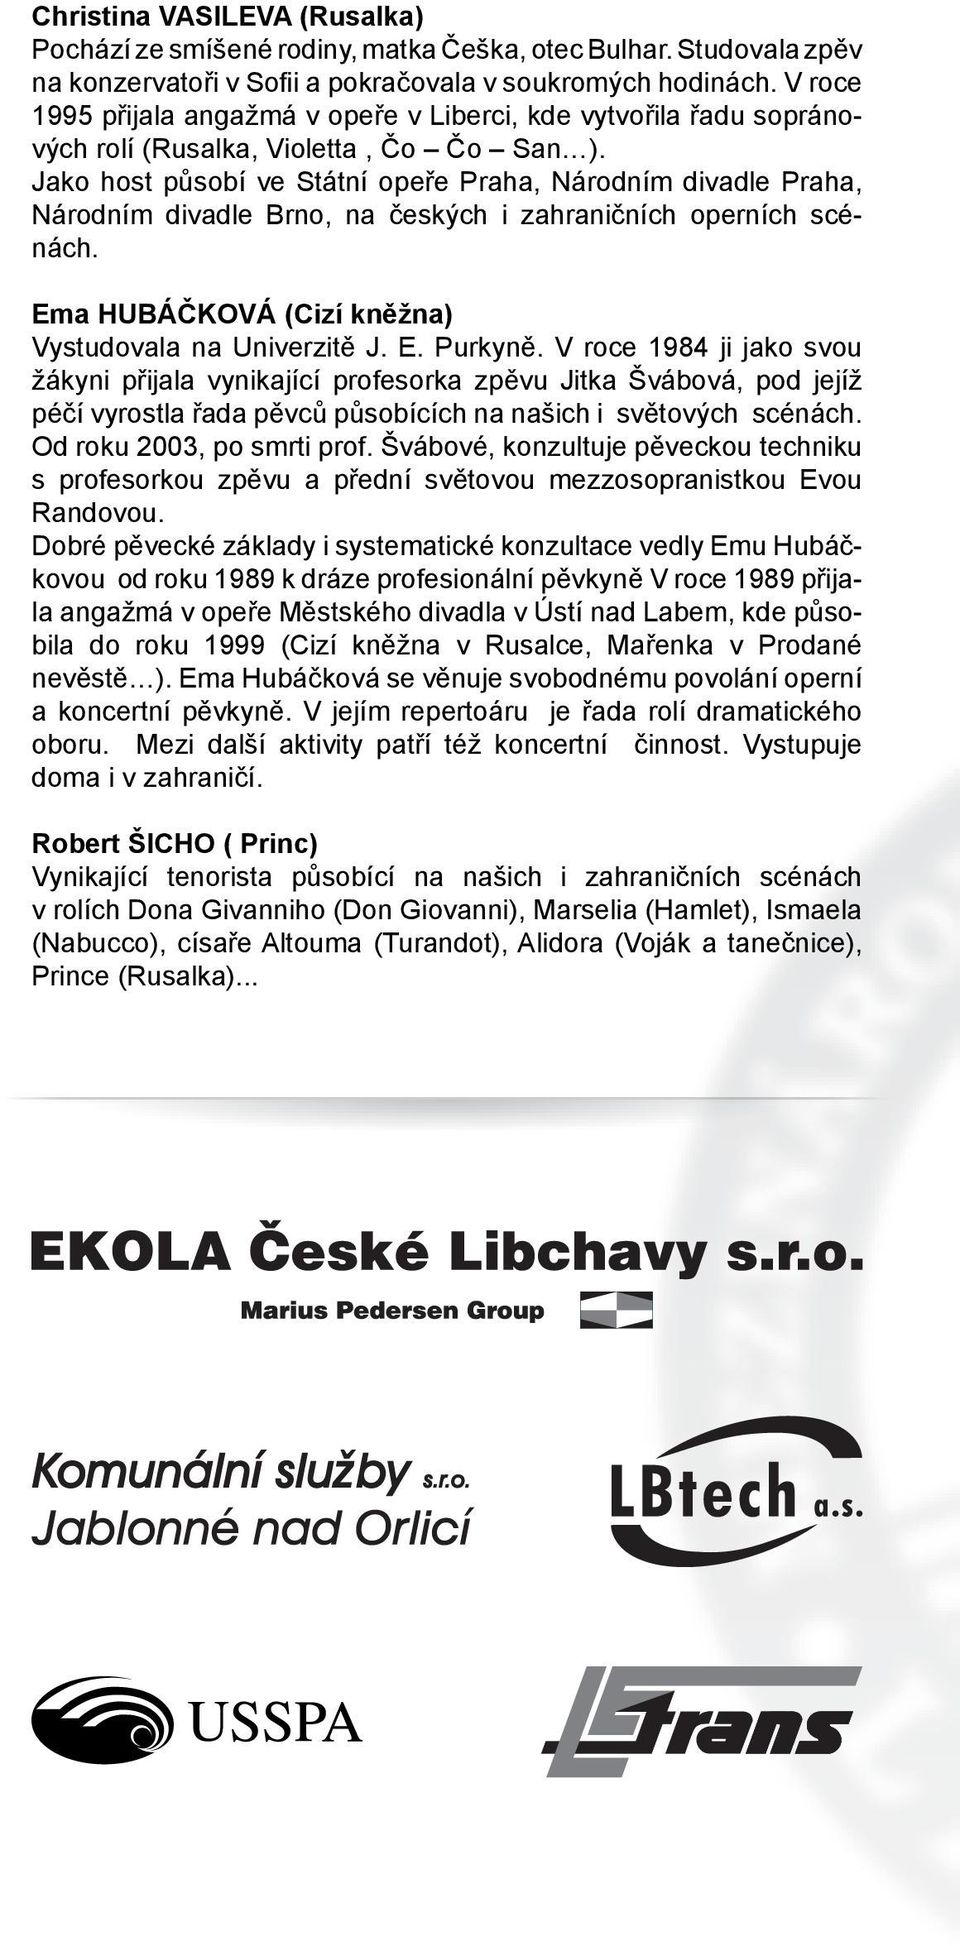 Jako host působí ve Státní opeře Praha, Národním divadle Praha, Národním divadle Brno, na českých i zahraničních operních scénách. Ema HUBÁČKOVÁ (Cizí kněžna) Vystudovala na Univerzitě J. E. Purkyně.